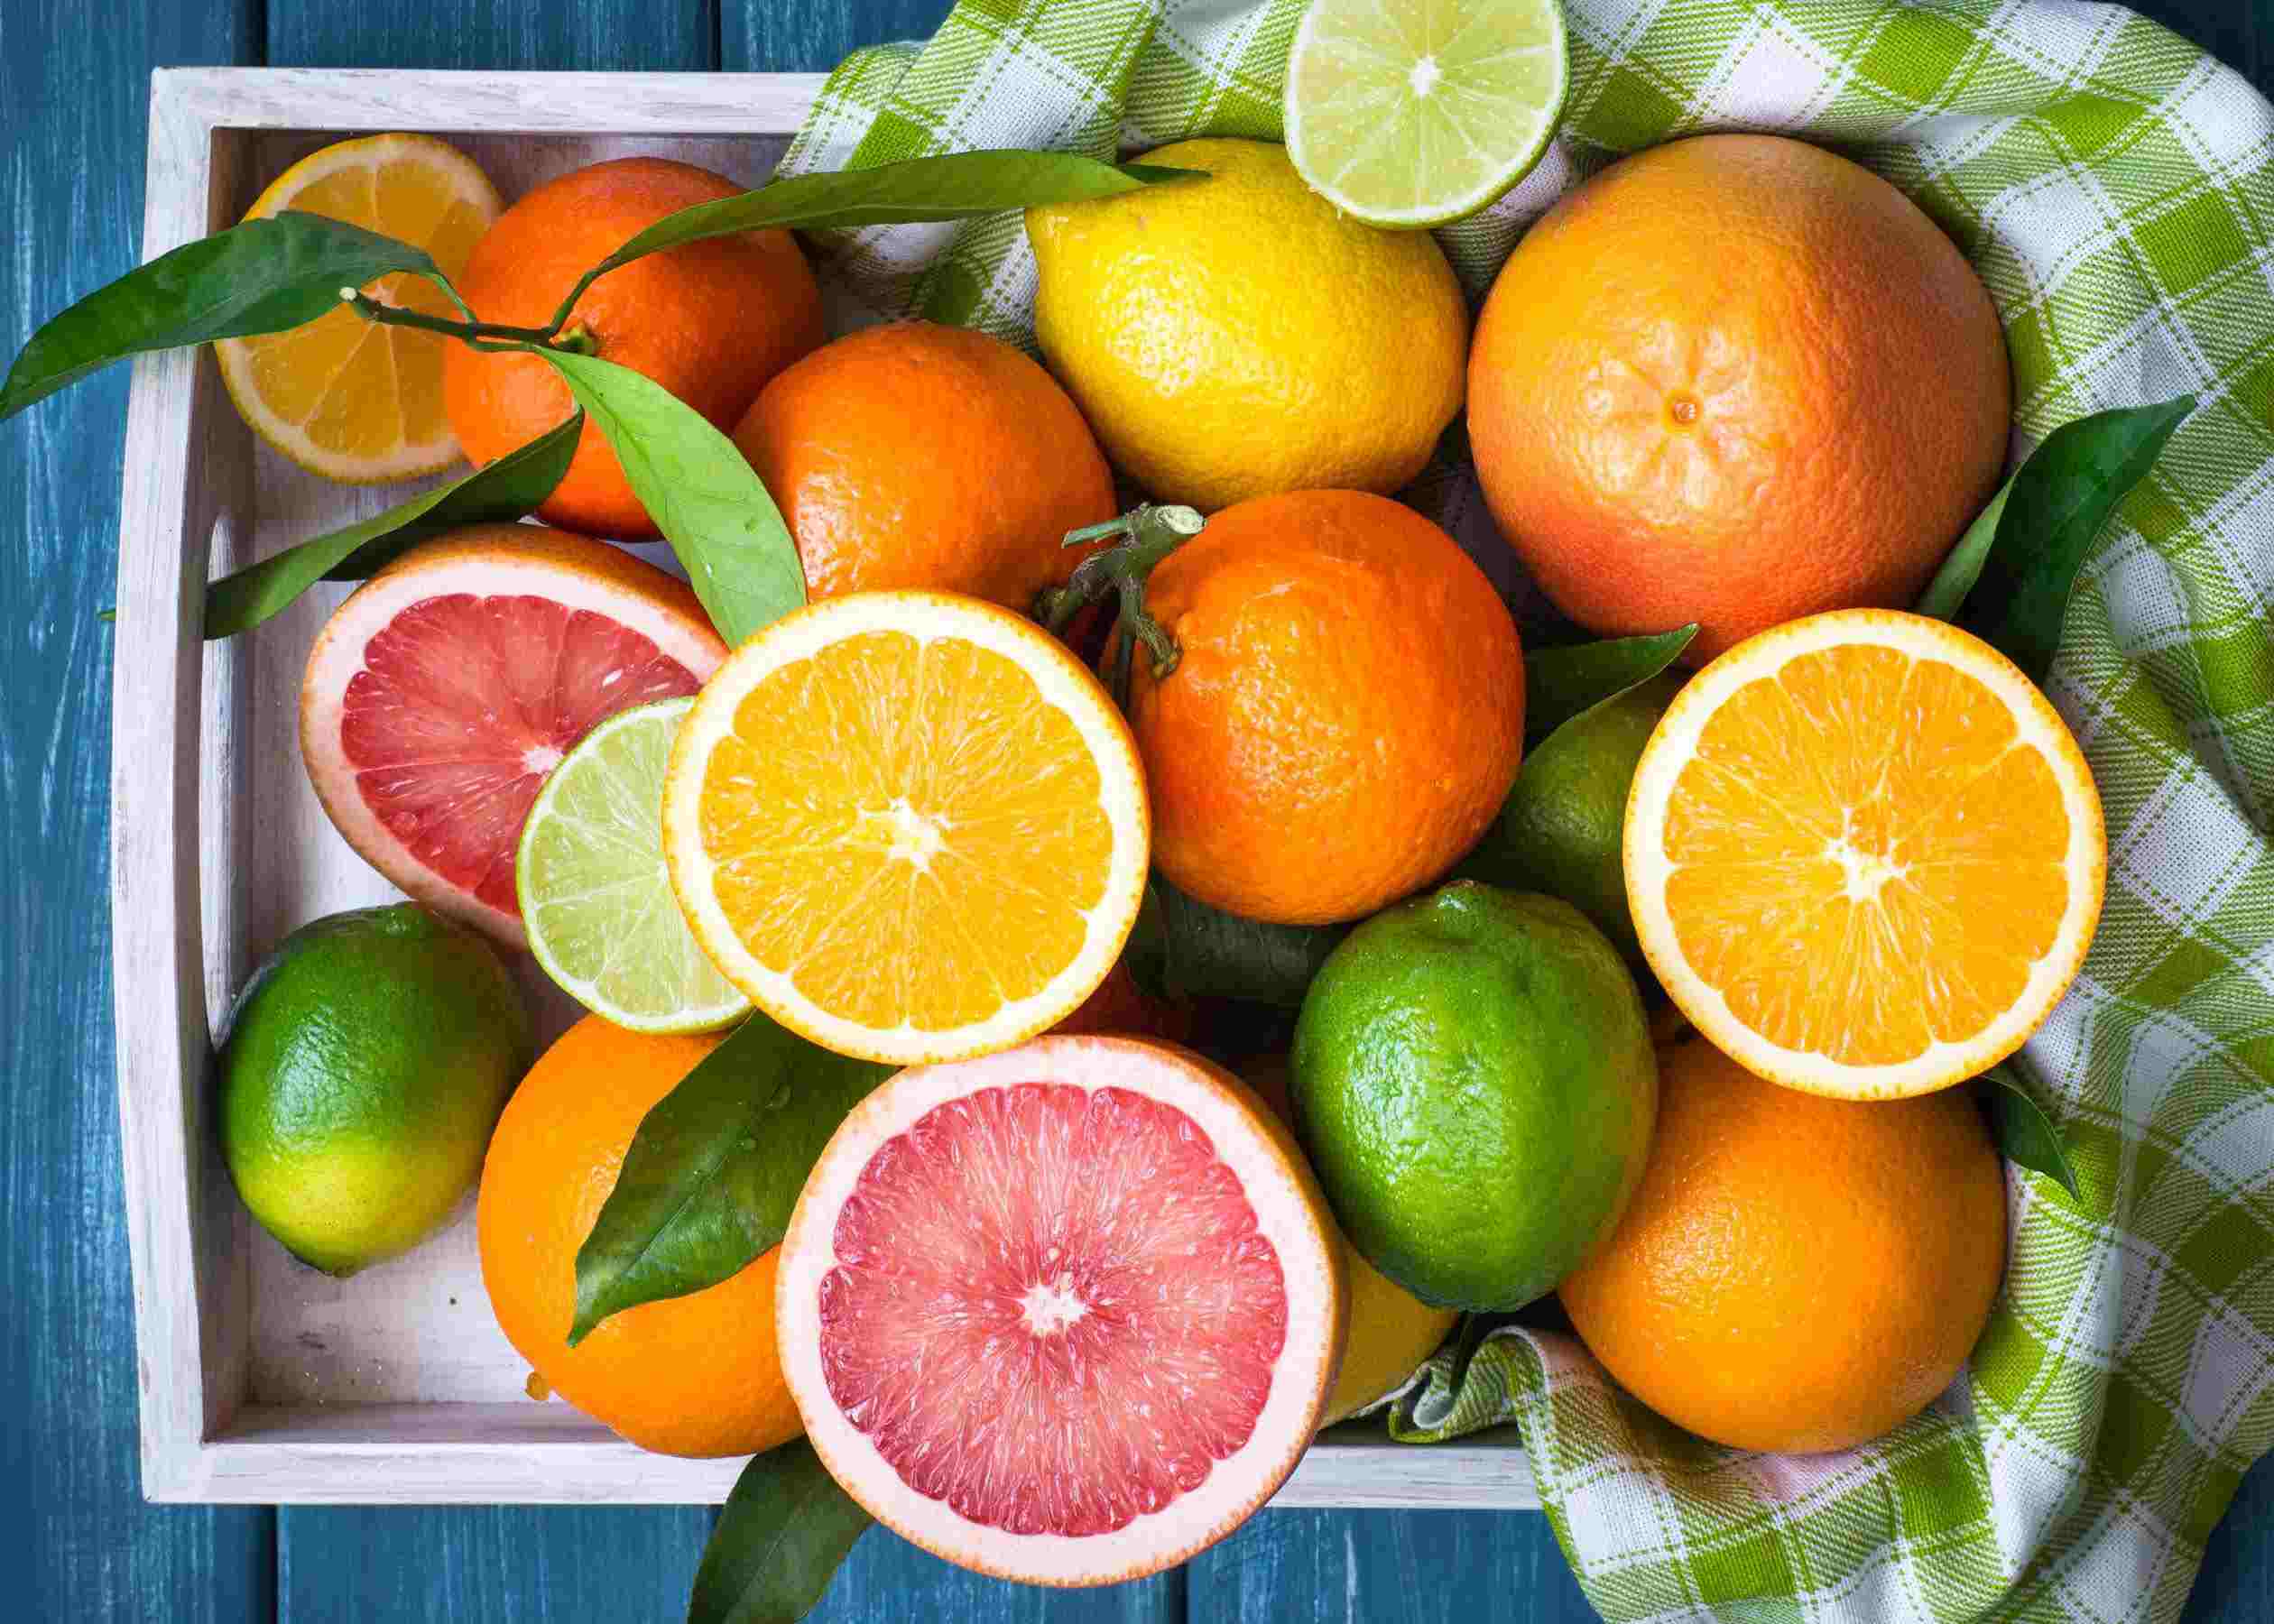 Мандарин citrus. Цитрус мандарин +апельсин. Фрукт цитрус кумкват. Апельсин, лимон, мандарин, грейпфрут, Цитрон. Лайм лимон апельсин мандарин.